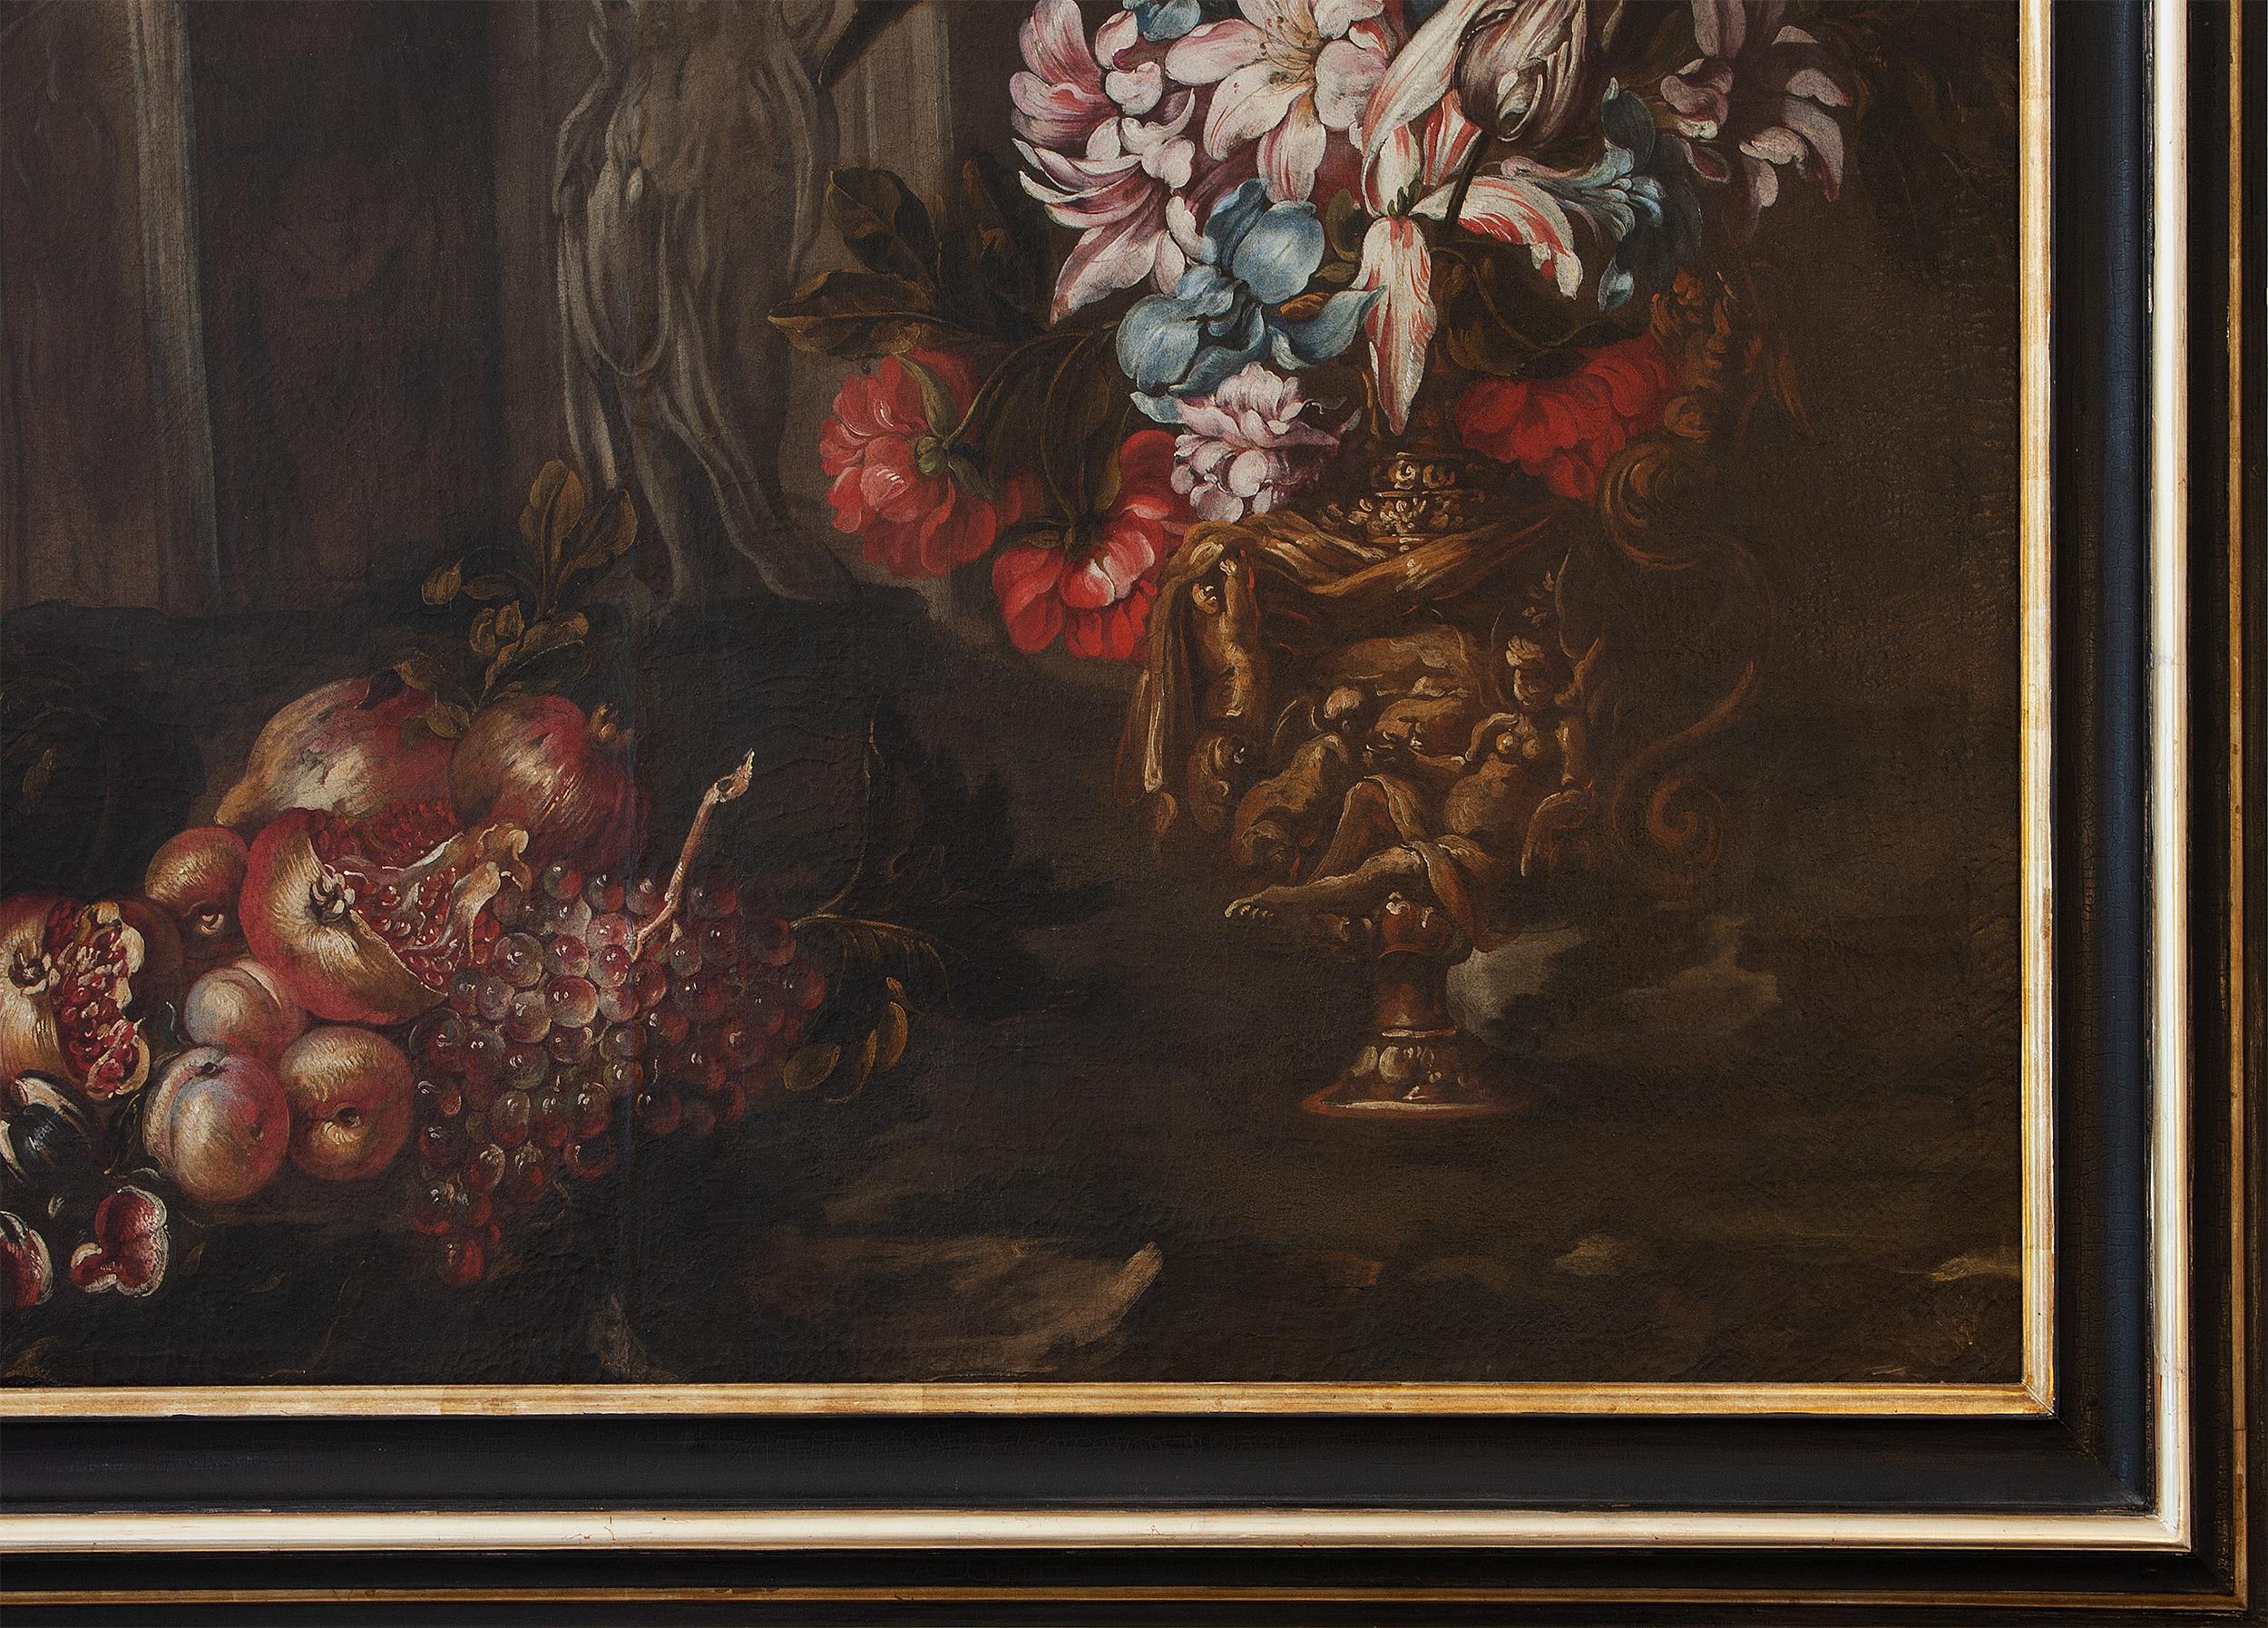 Stilleben mit Blumenvase, Obst und Bauruinen  – Painting von Unknown